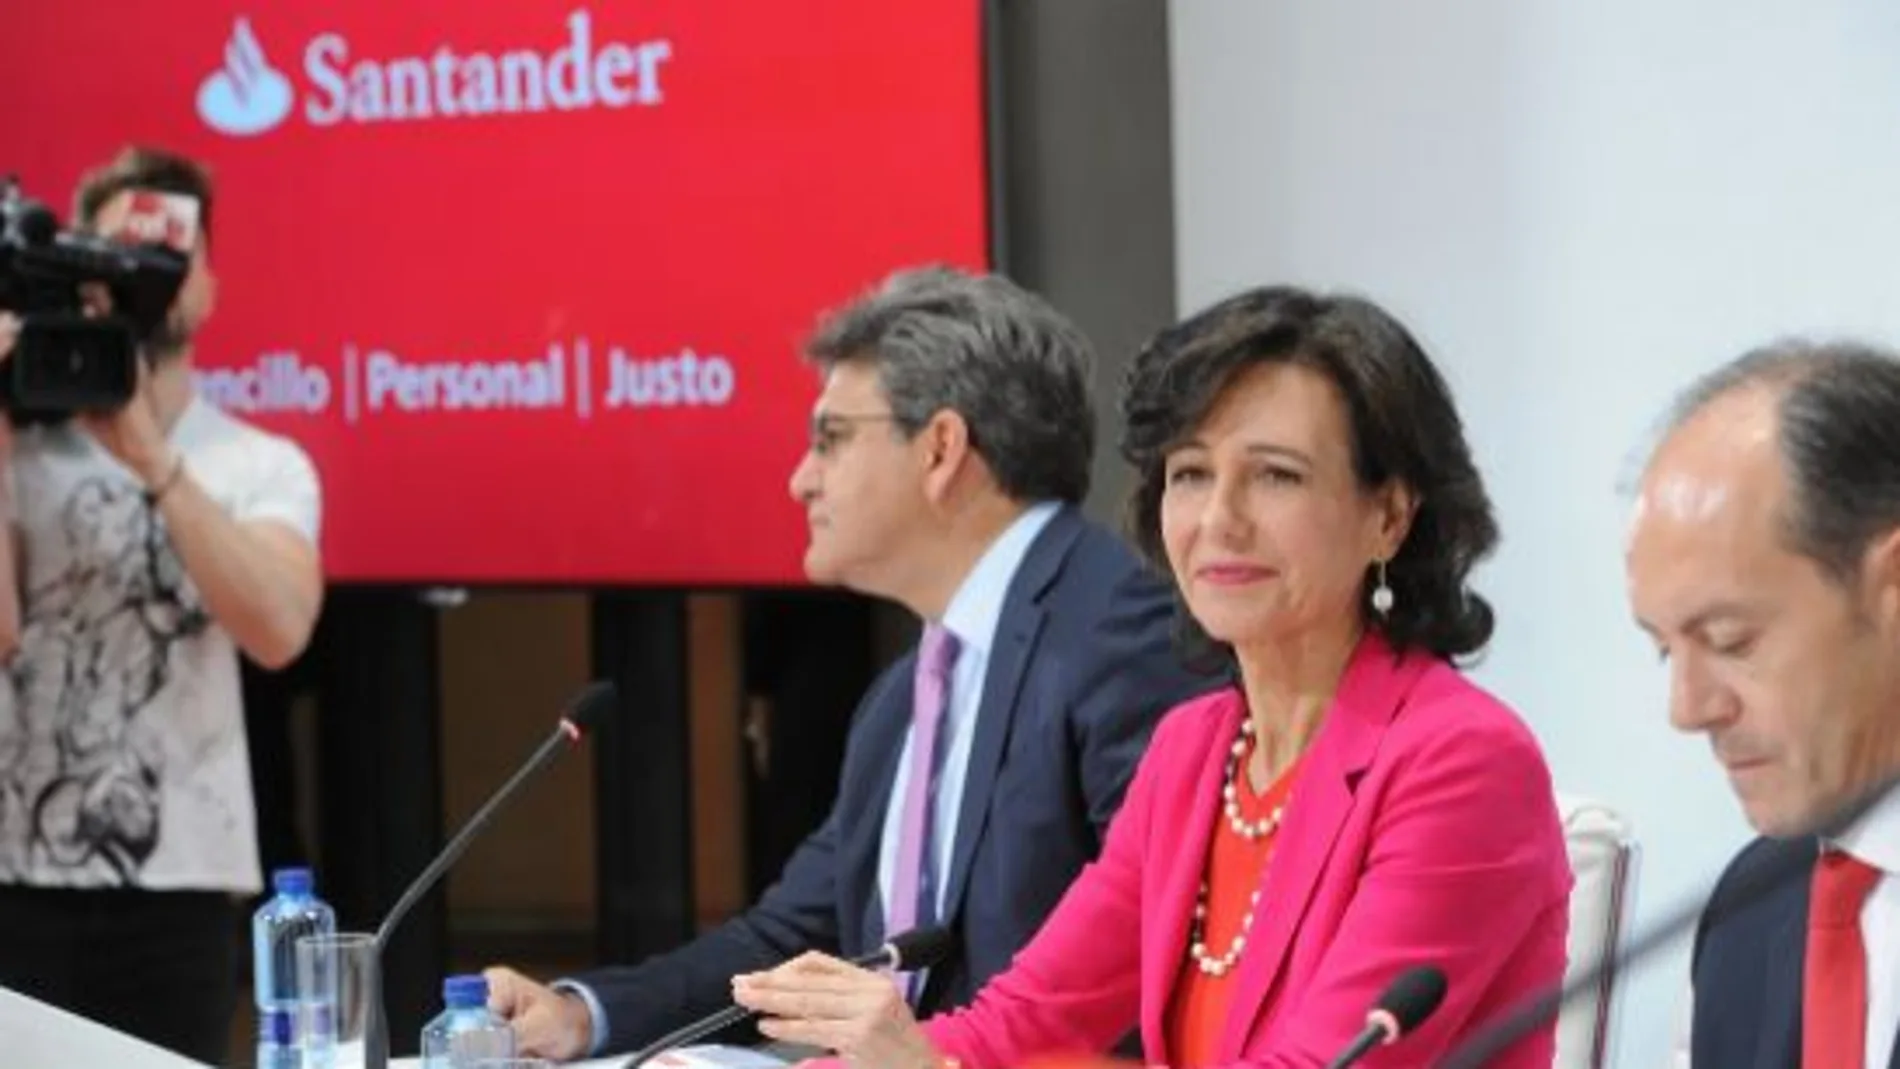 La presidenta del Santander, Ana Patricia Botín